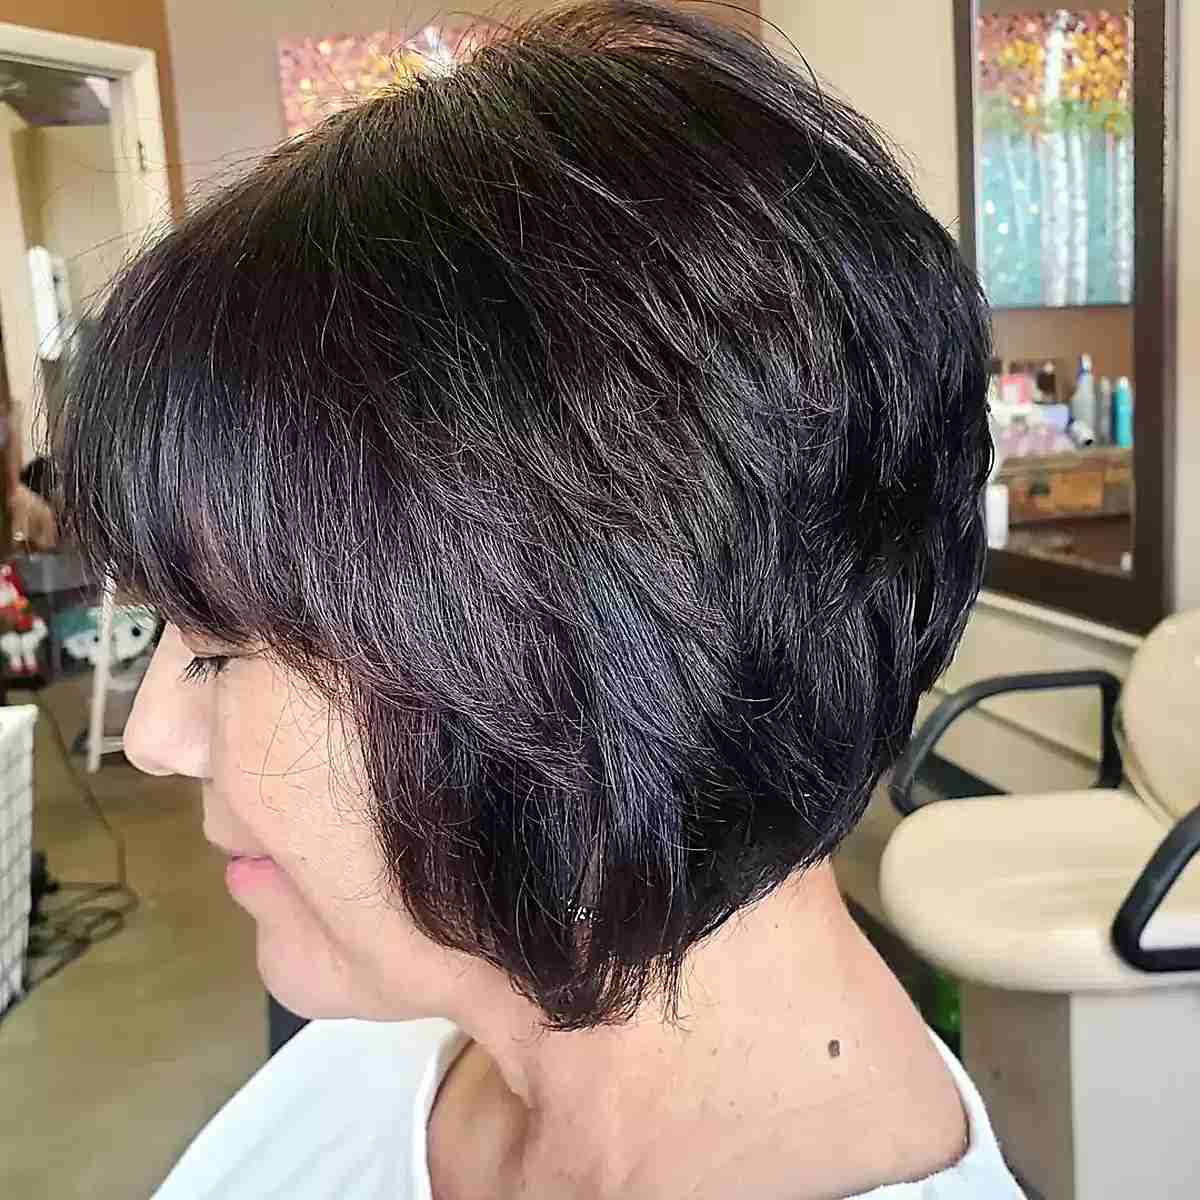 Corte de cabelo em linha A estilo marrom escuro com mechas e franjas